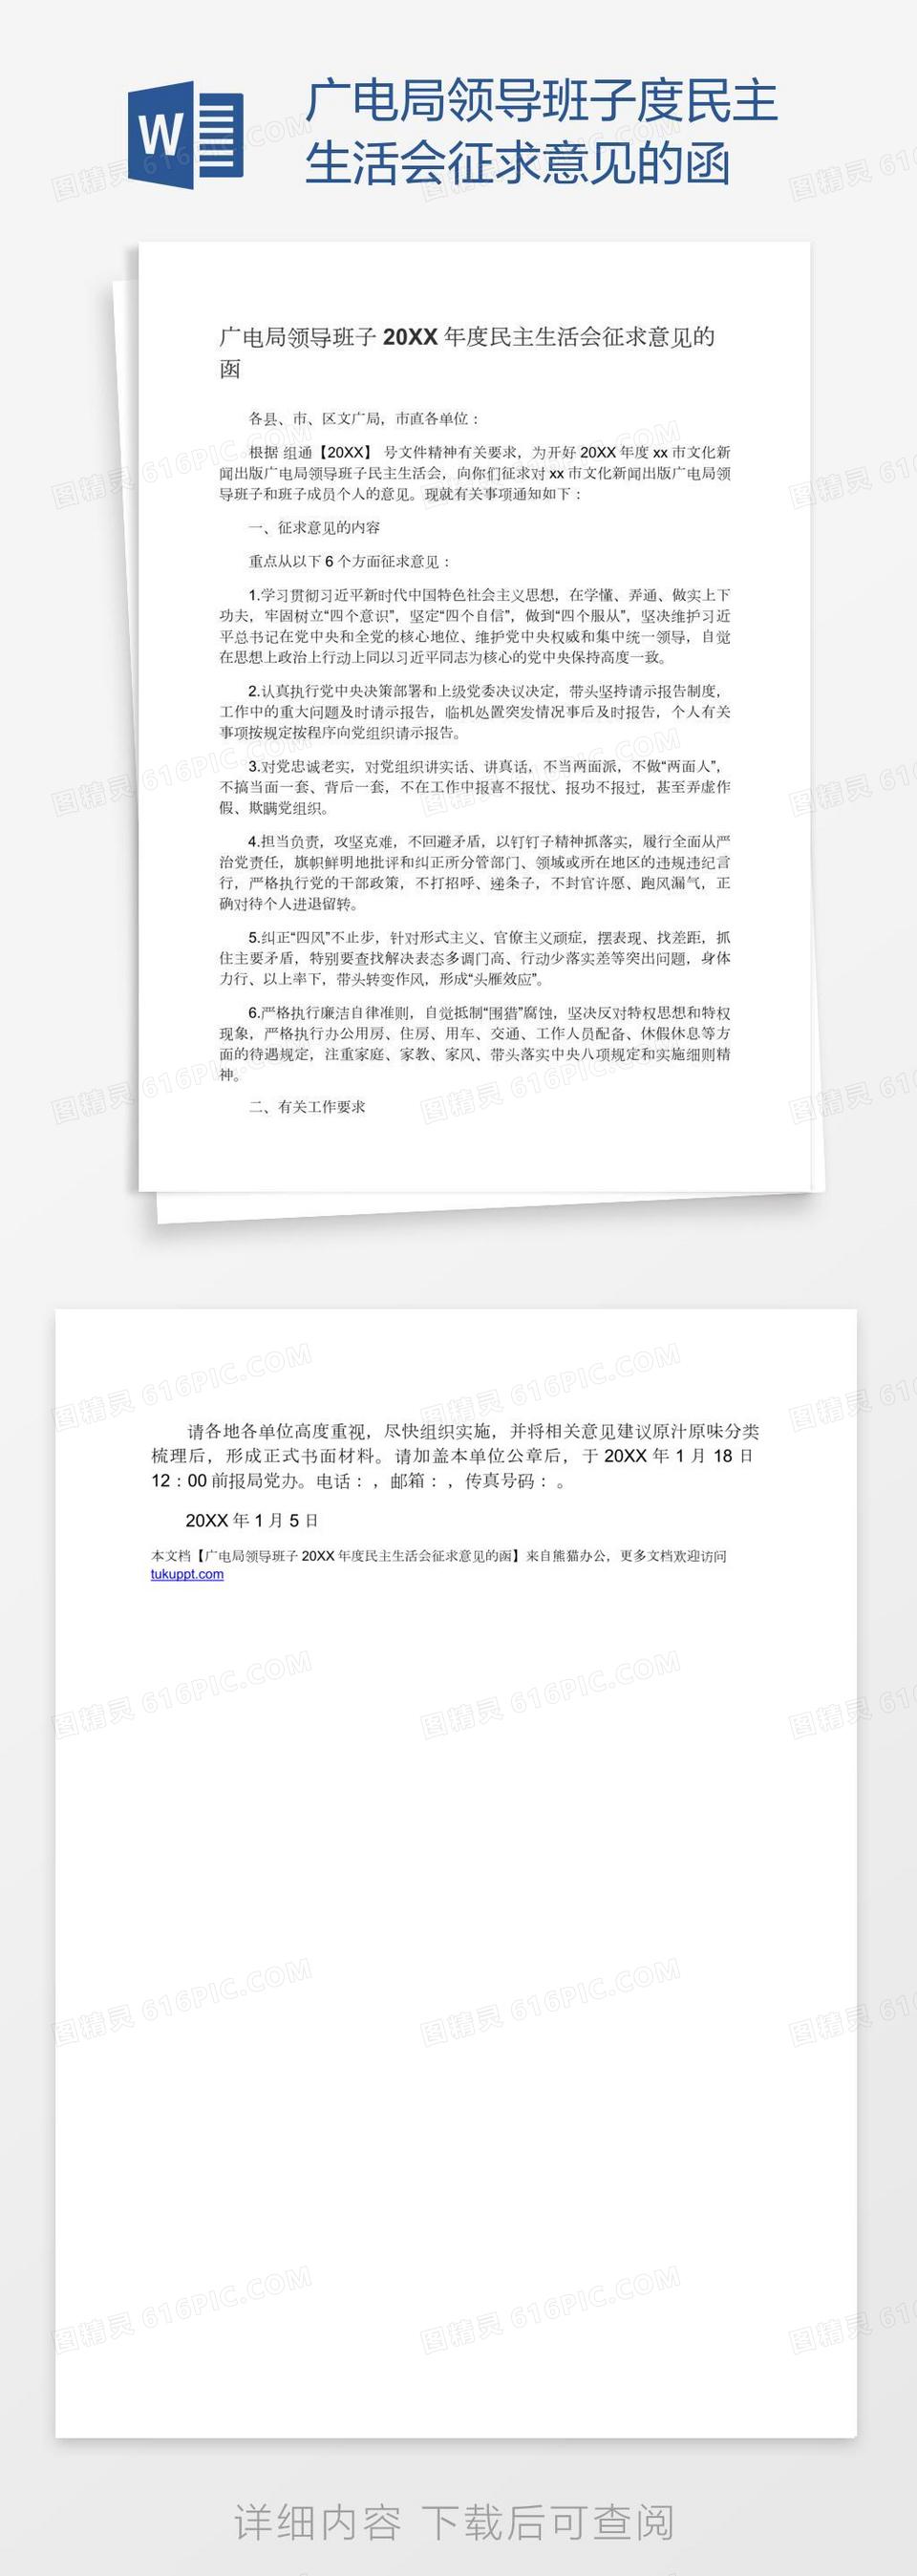 广电局领导班子度民主生活会征求意见的函